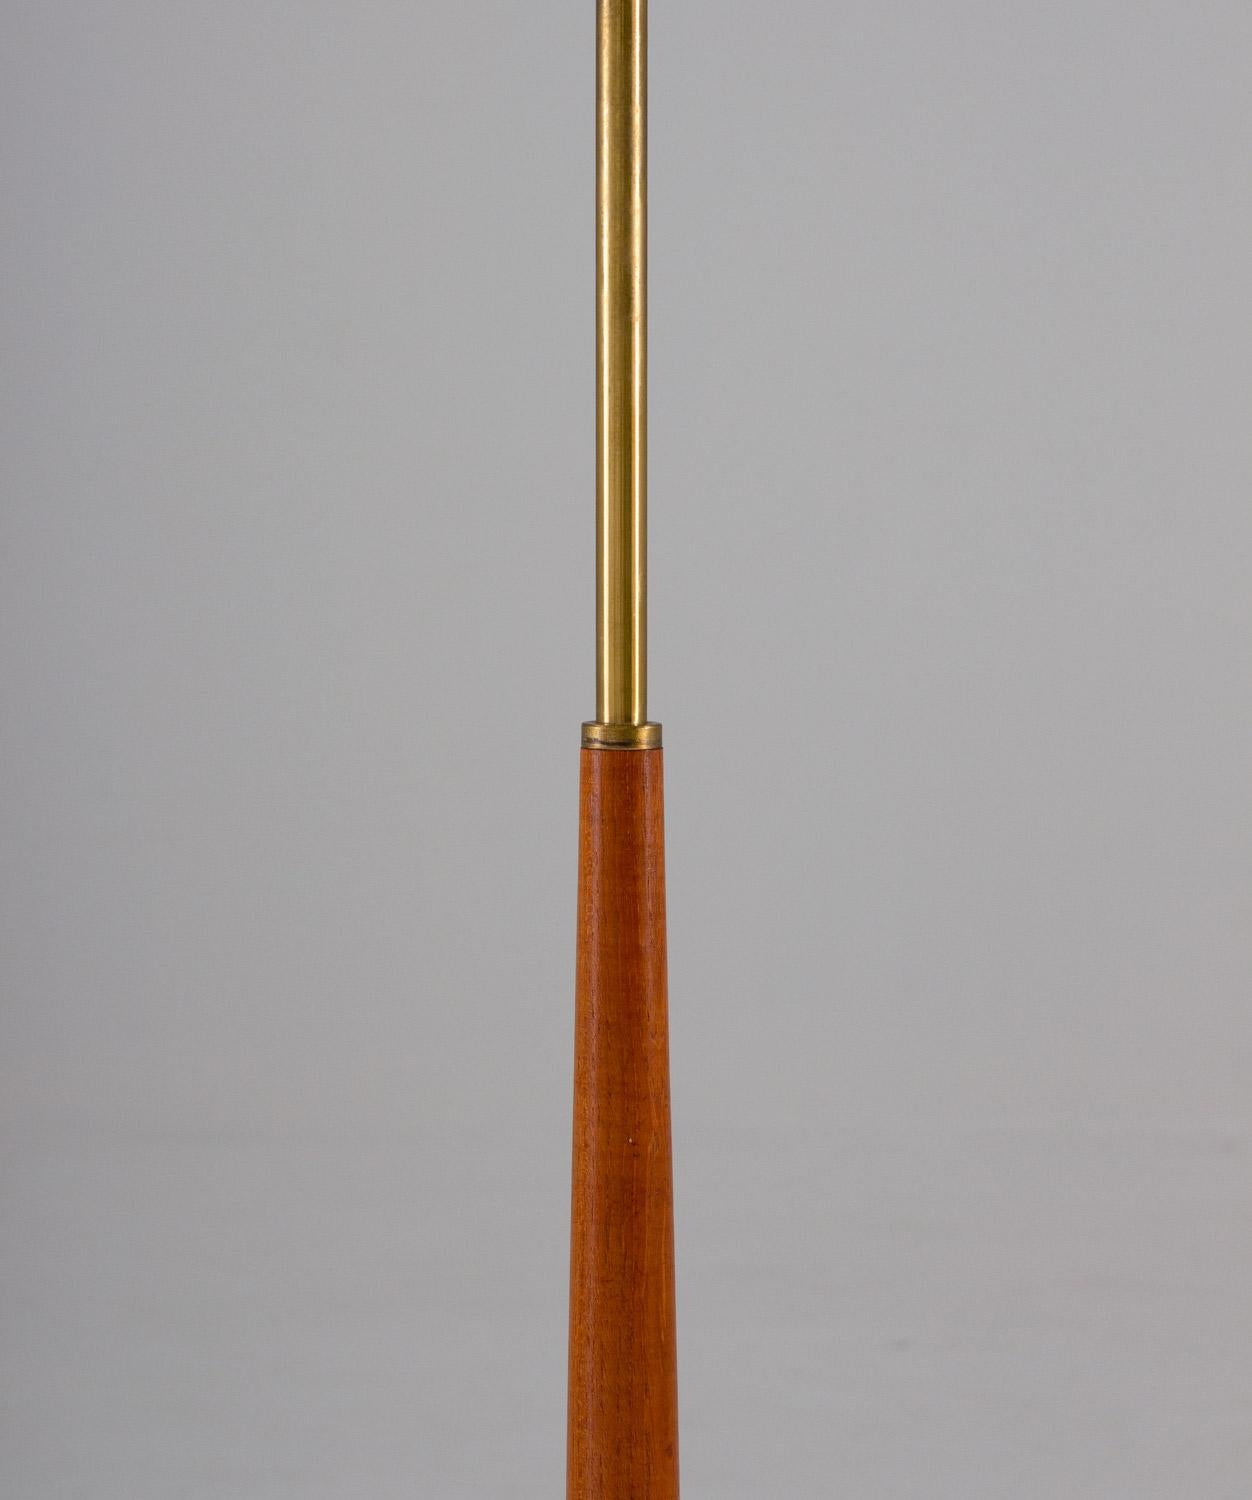 Swedish Scandinavian Midcentury Floor Lamps in Brass and Wood